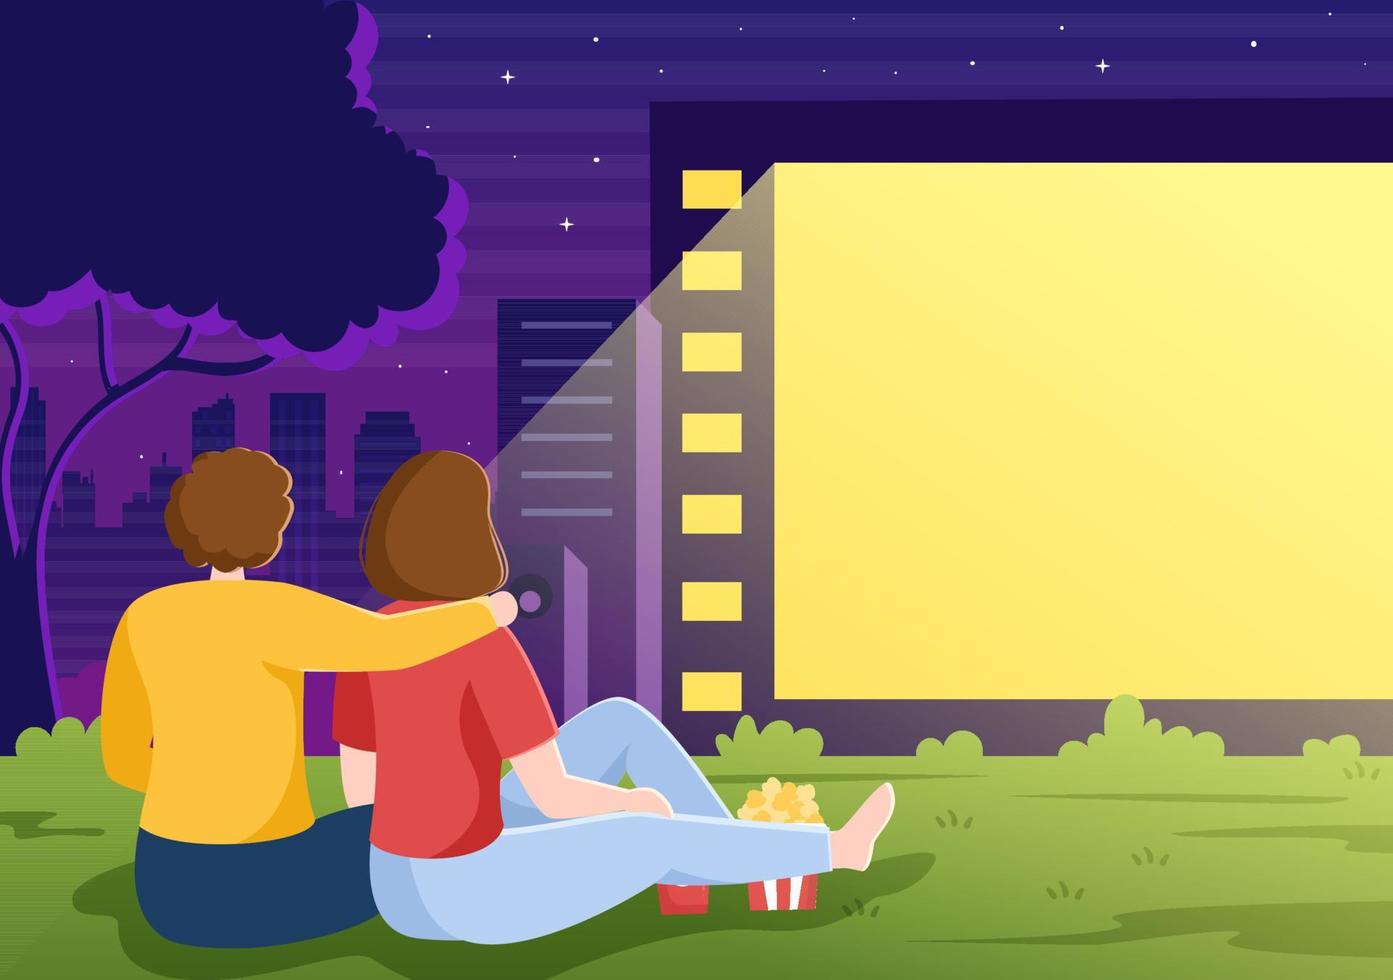 soirée cinéma cinéma avec système de sonorisation pour regarder un film sur grand écran extérieur en illustration de fond design plat pour affiche ou bannière vecteur